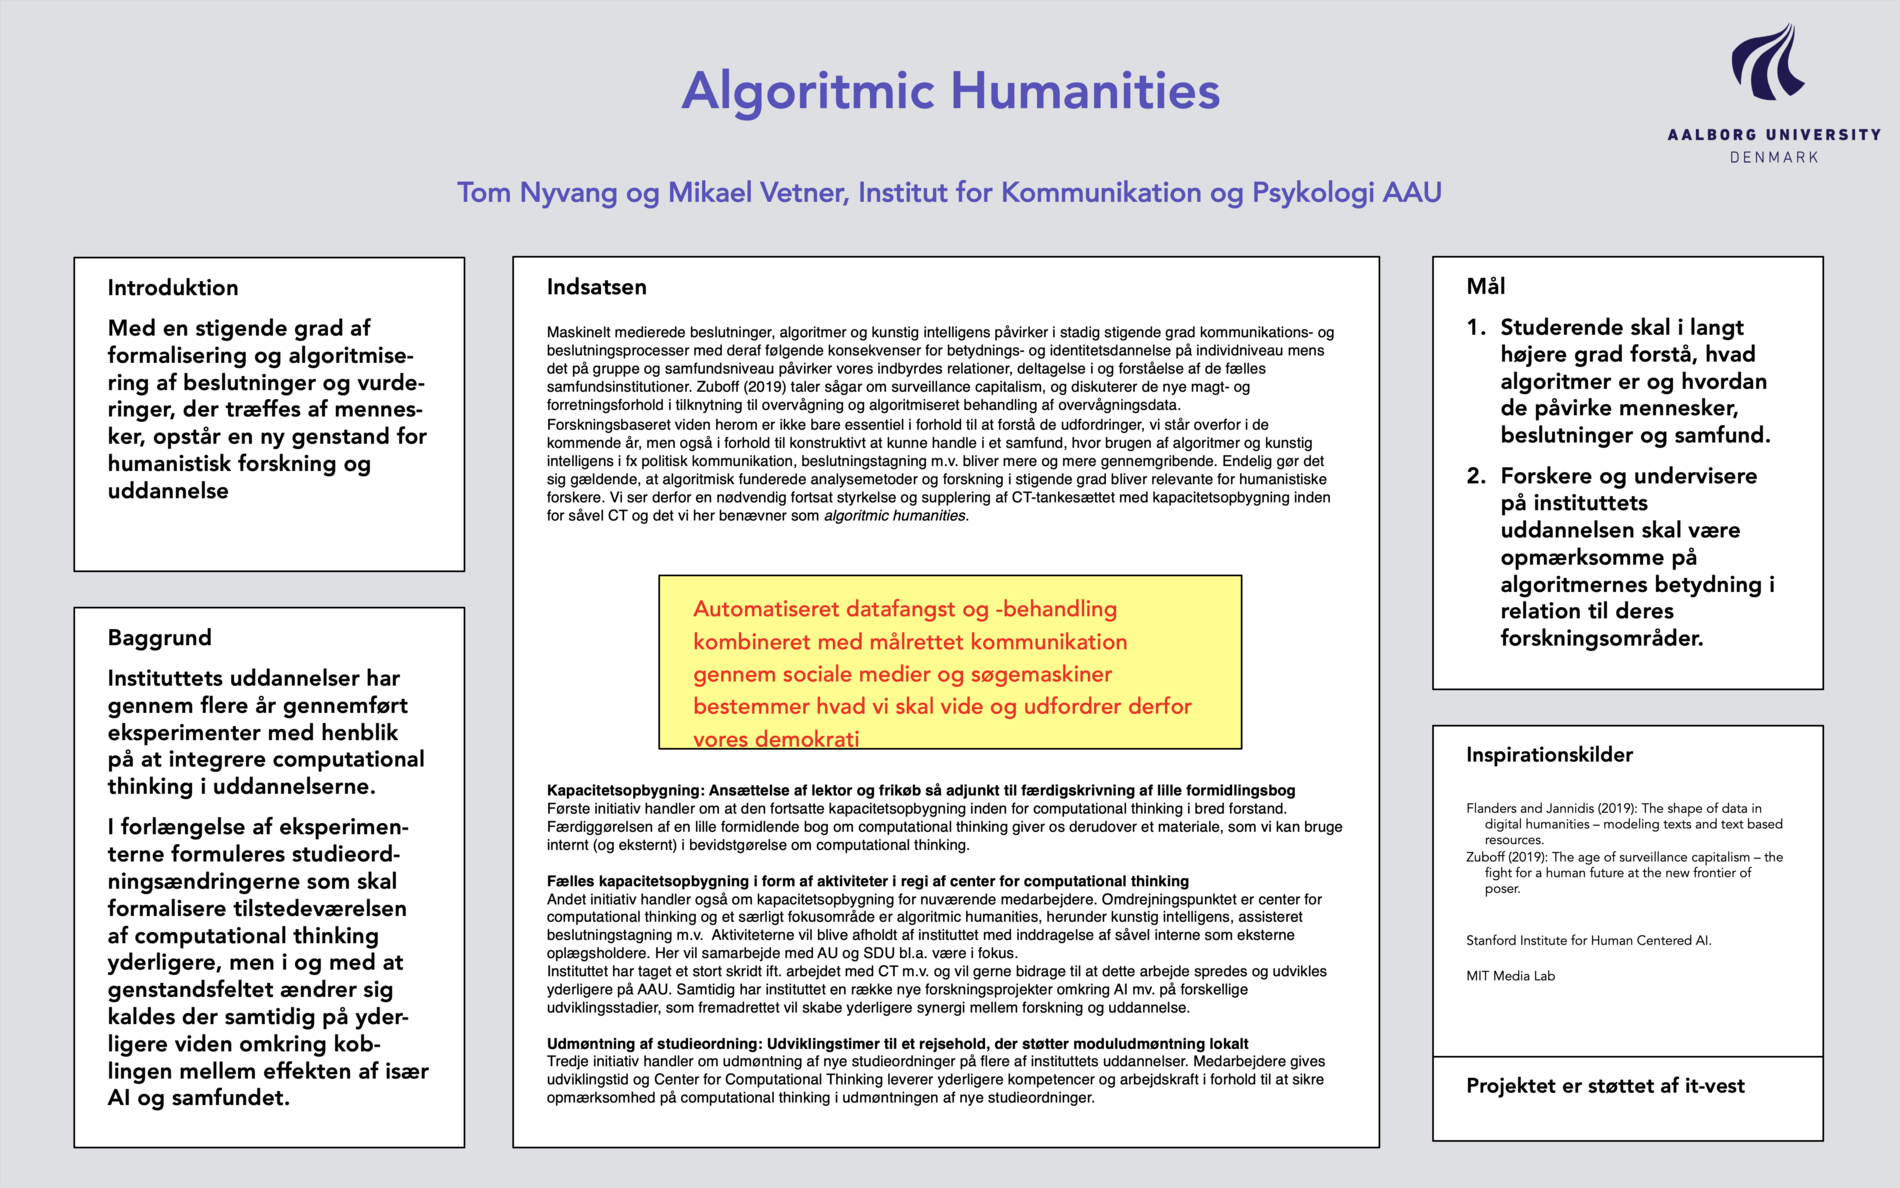 Link til pdf med poster for Algorithmic Humanities, AAU